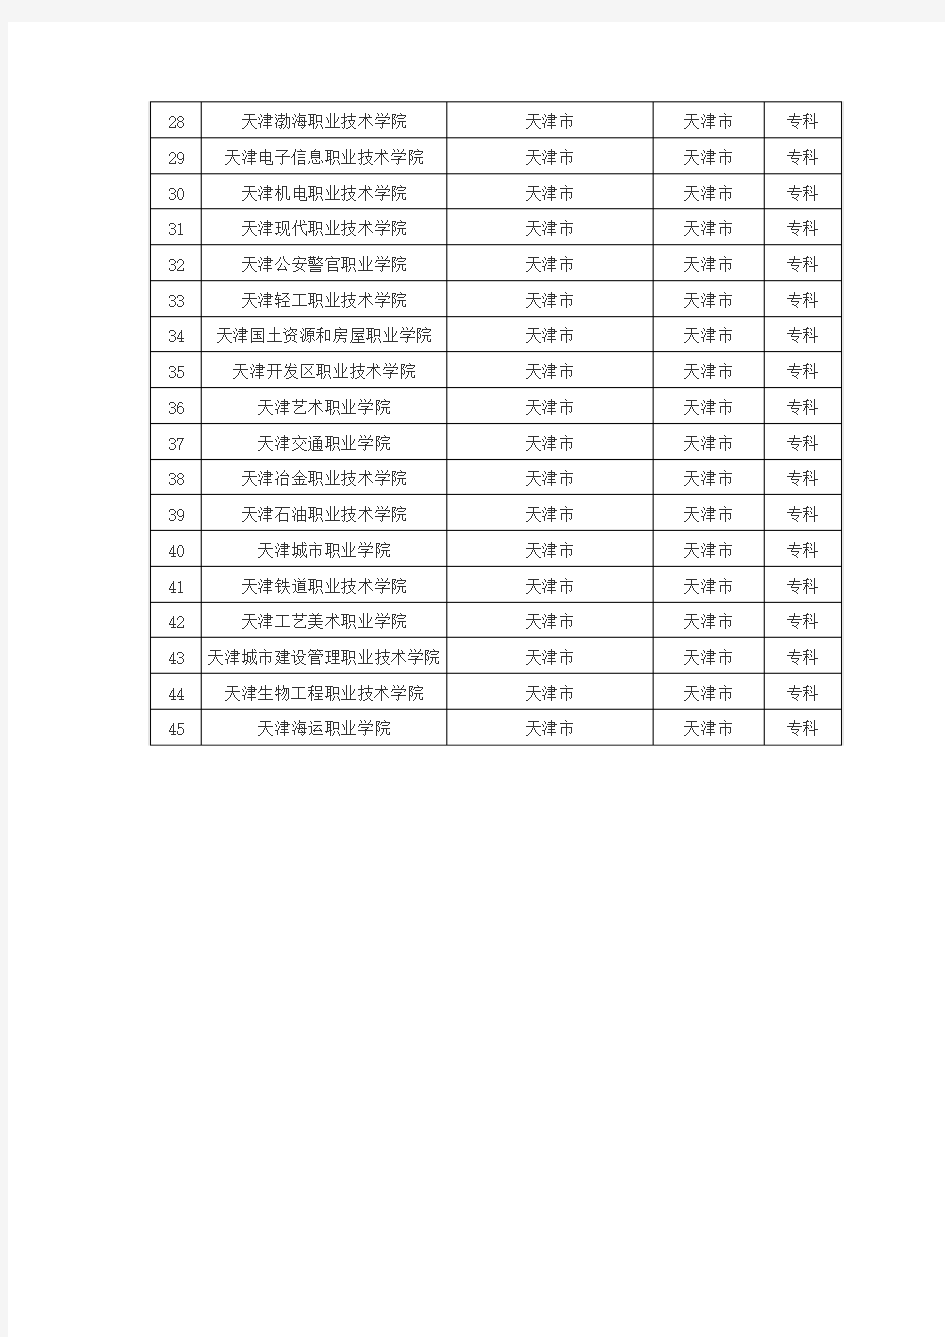 天津市普通高校名单(45所)